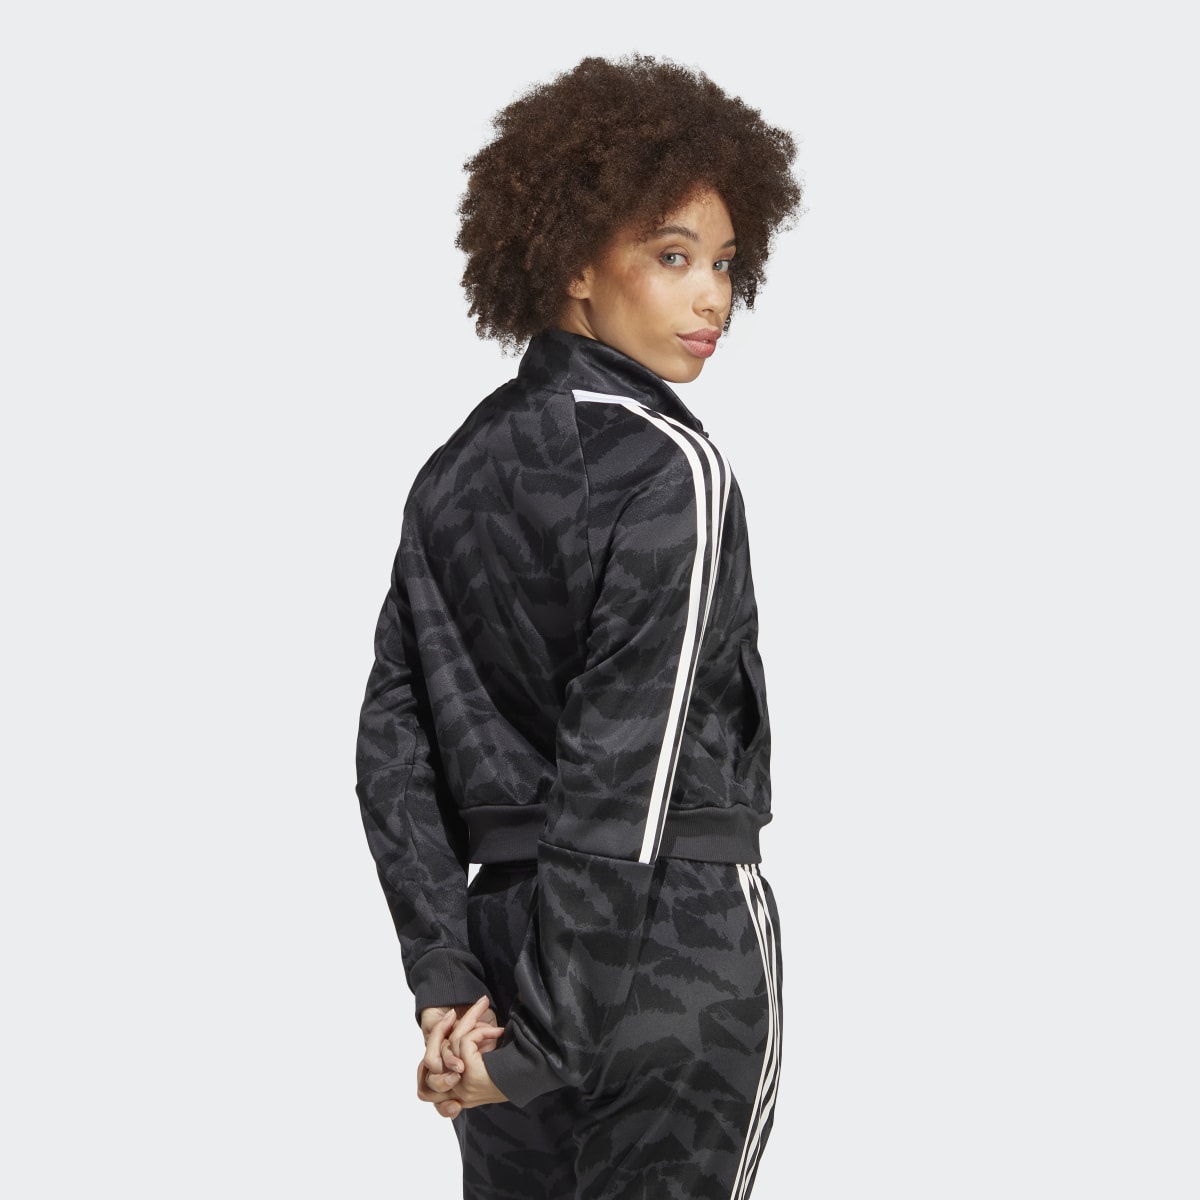 Adidas Tiro Suit Up Lifestyle Track Jacket. 8